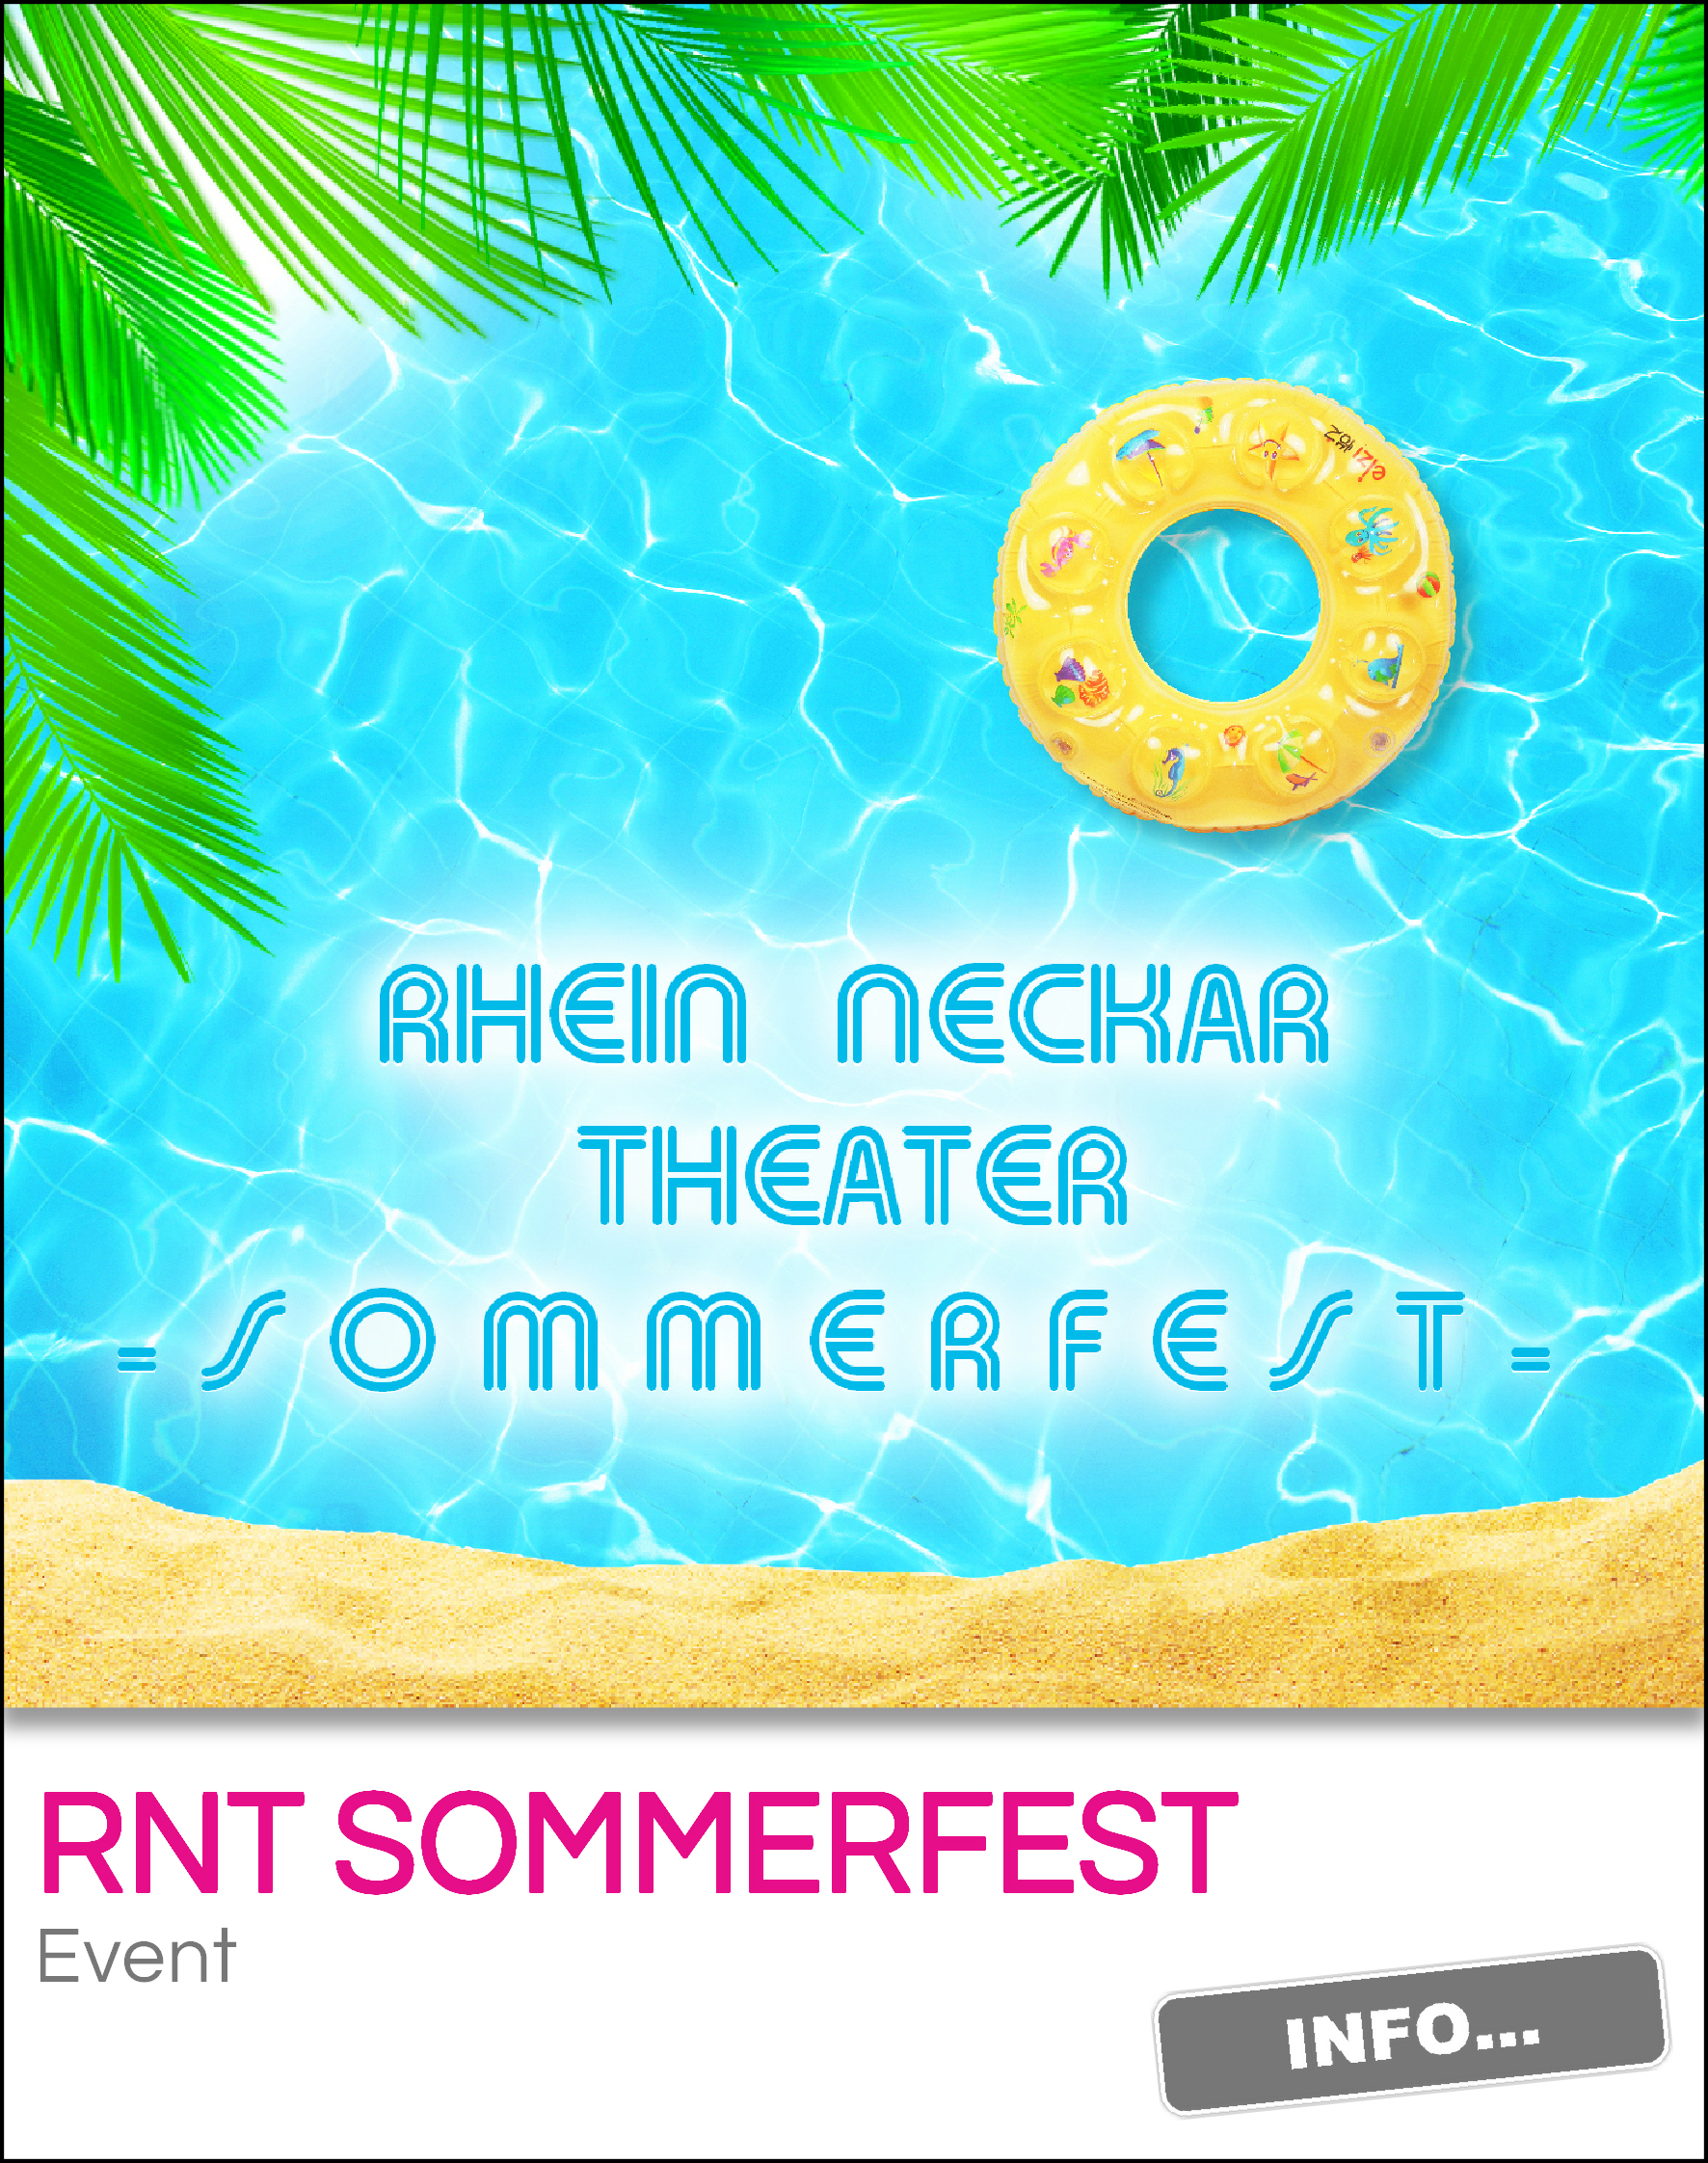 RNT Sommerfest